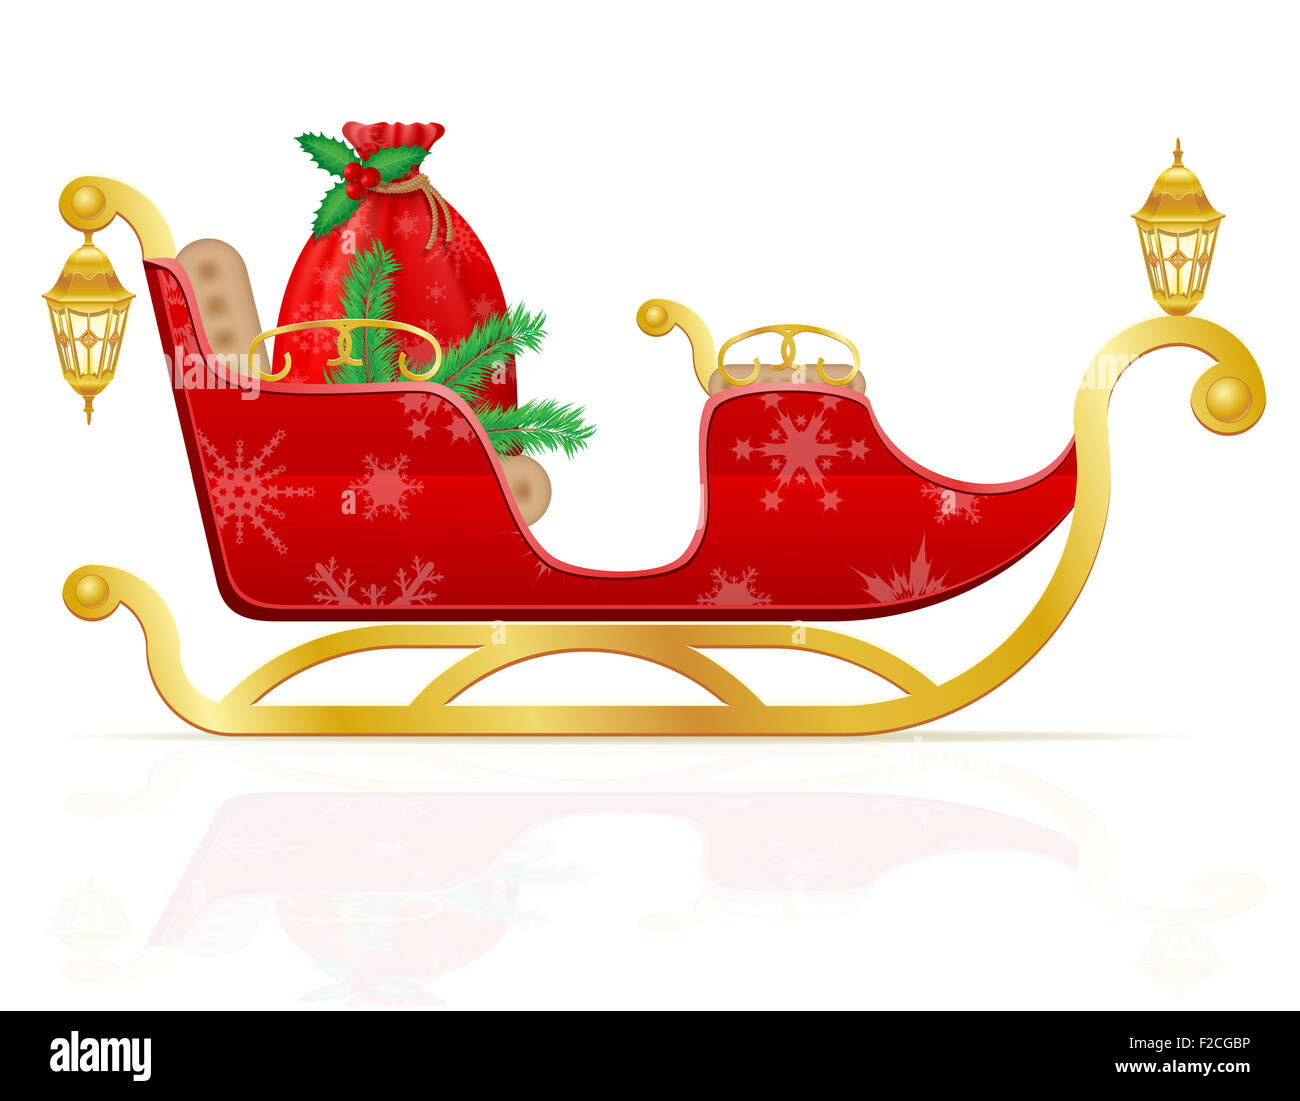 Traîneau de Noël rouge du père Noël avec des cadeaux illustration isolé sur fond blanc Banque D'Images